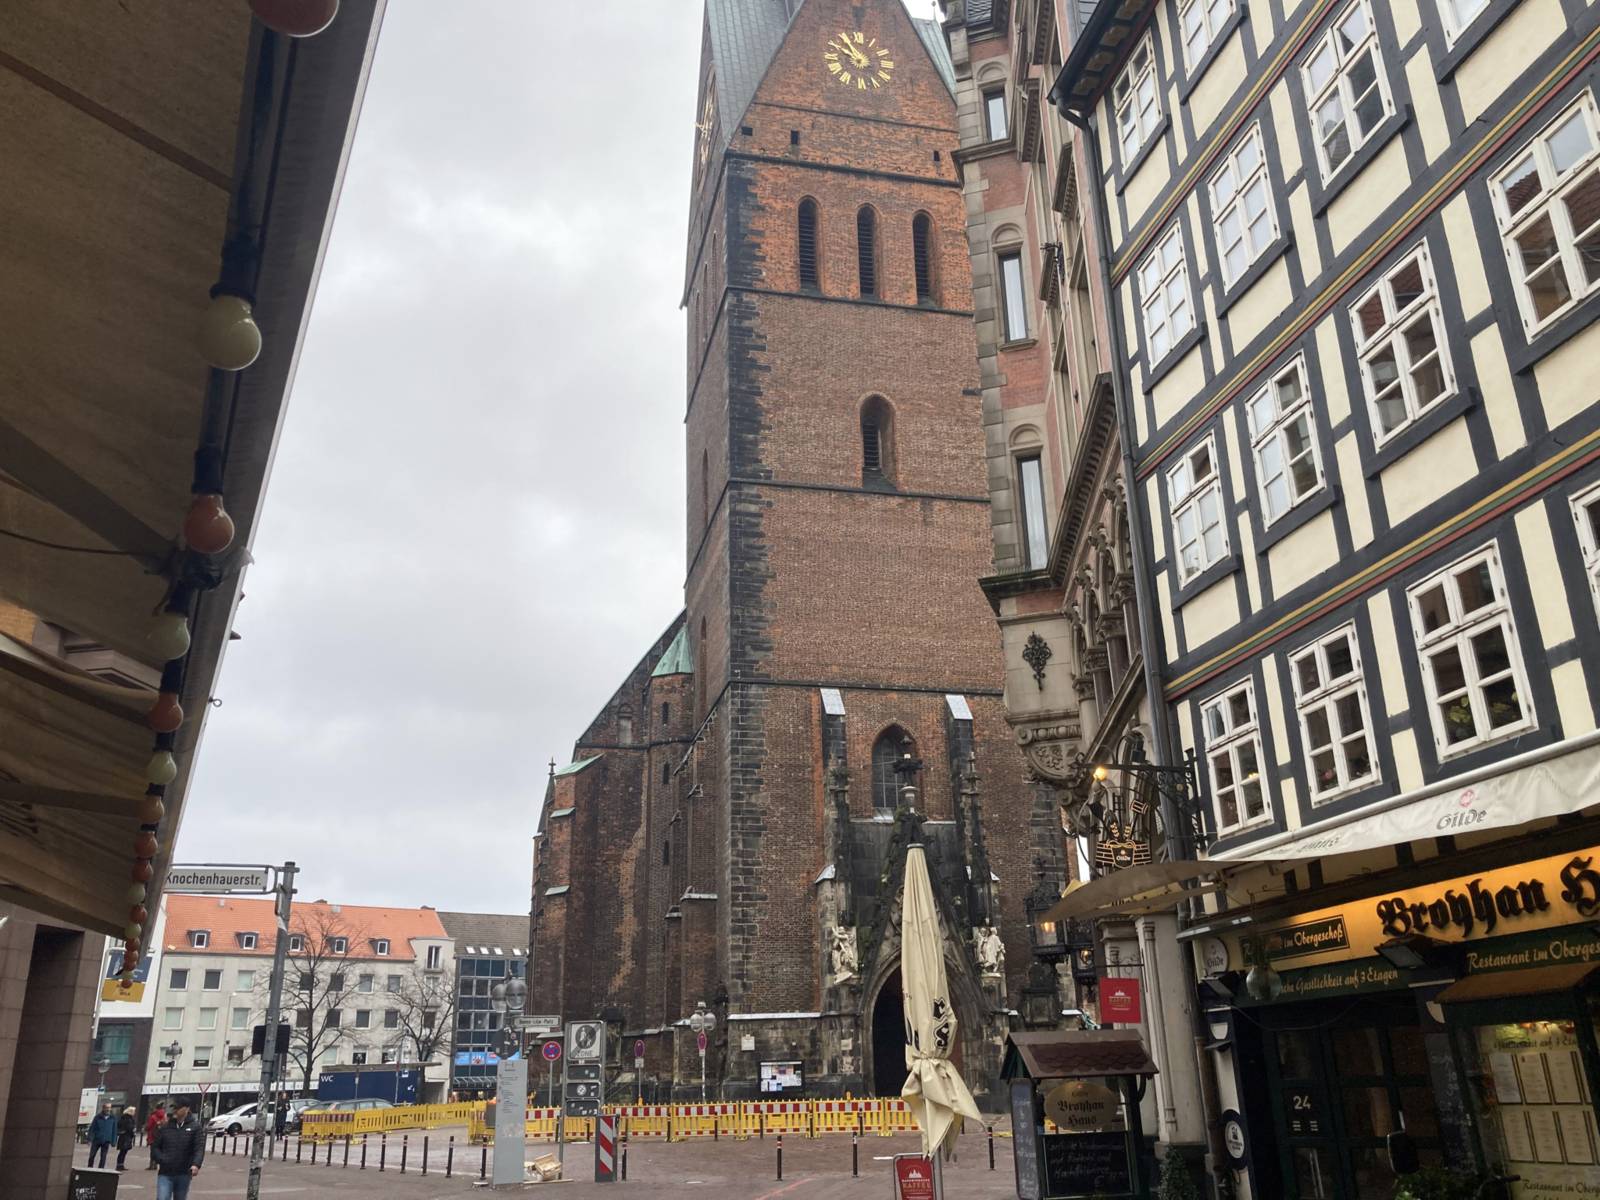 Blick auf die Marktkirche Hannover mit teils abgesperrtem Vorplatz.